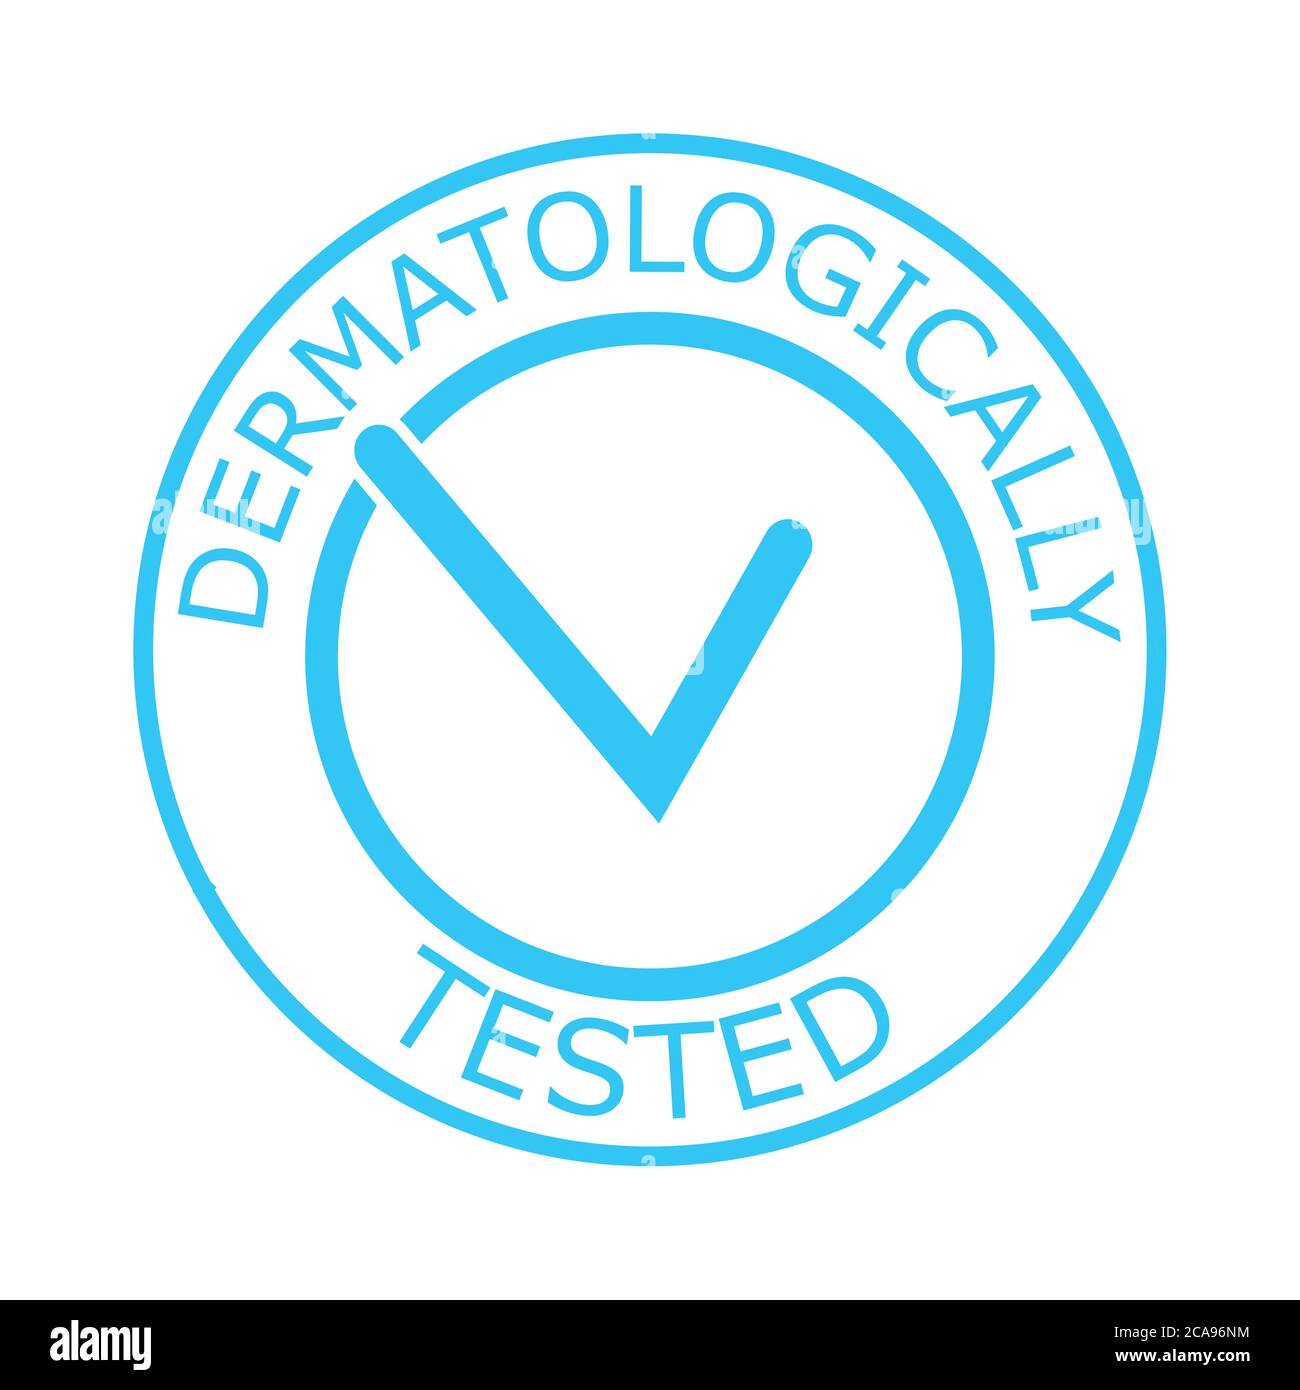 Dermatologisch getestetes Vektoretikett mit Karo-Logo. Dermatologie-Test und Dermatologe klinisch bewährte Symbol für allergiefrei und gesund sicher Stock Vektor